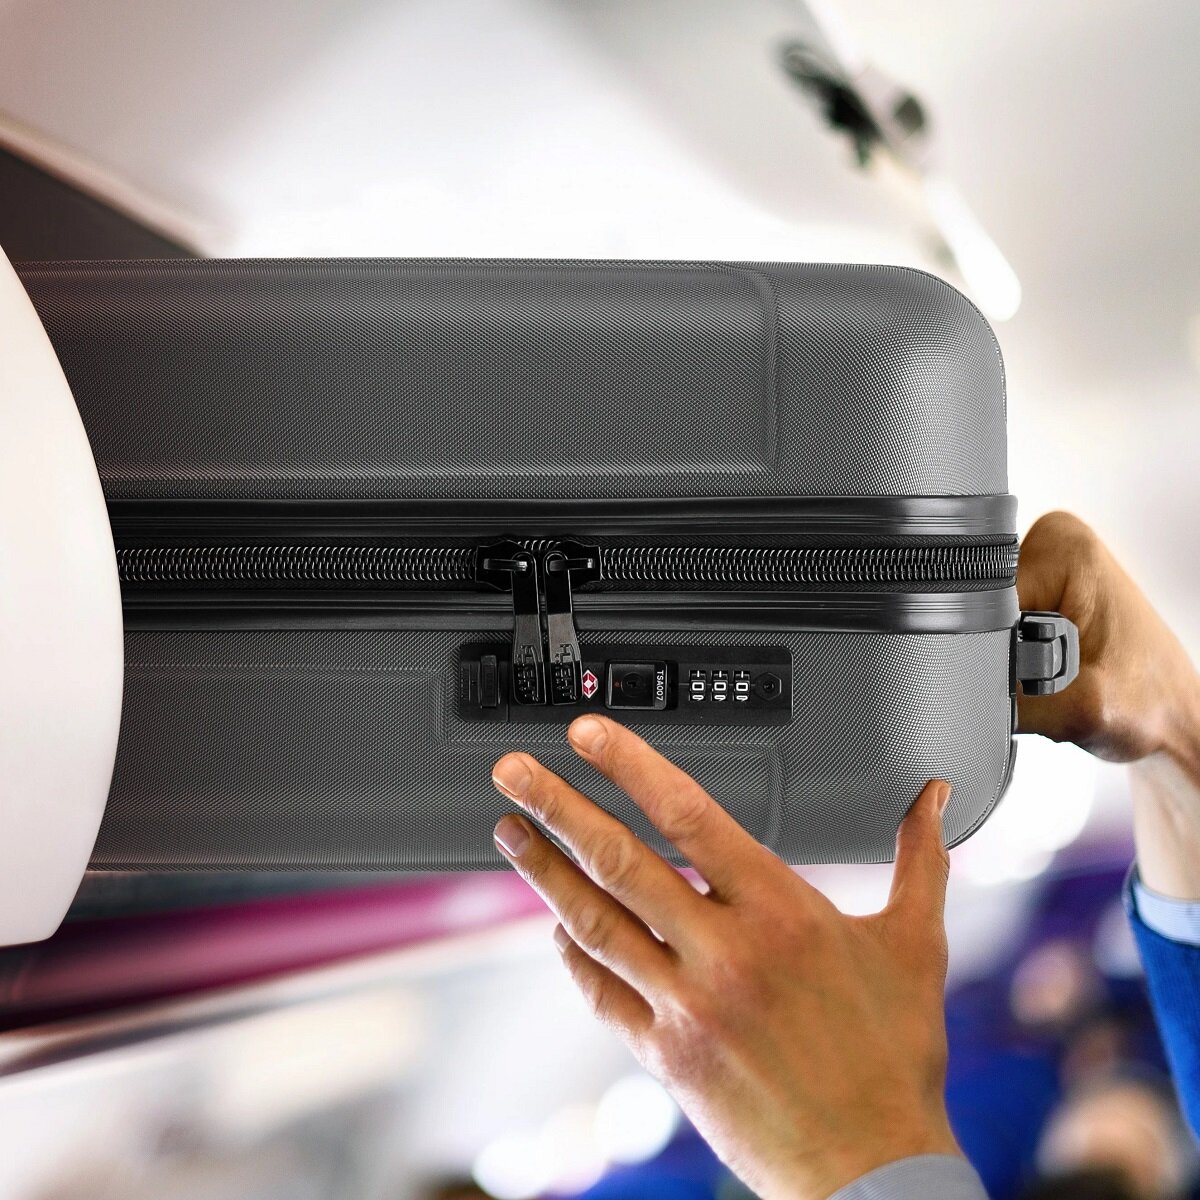 Walizka Anpa średnia  antracytowa  wkładanie  walizki w kabinie samolotu w miejsce na bagaże nad fotelem